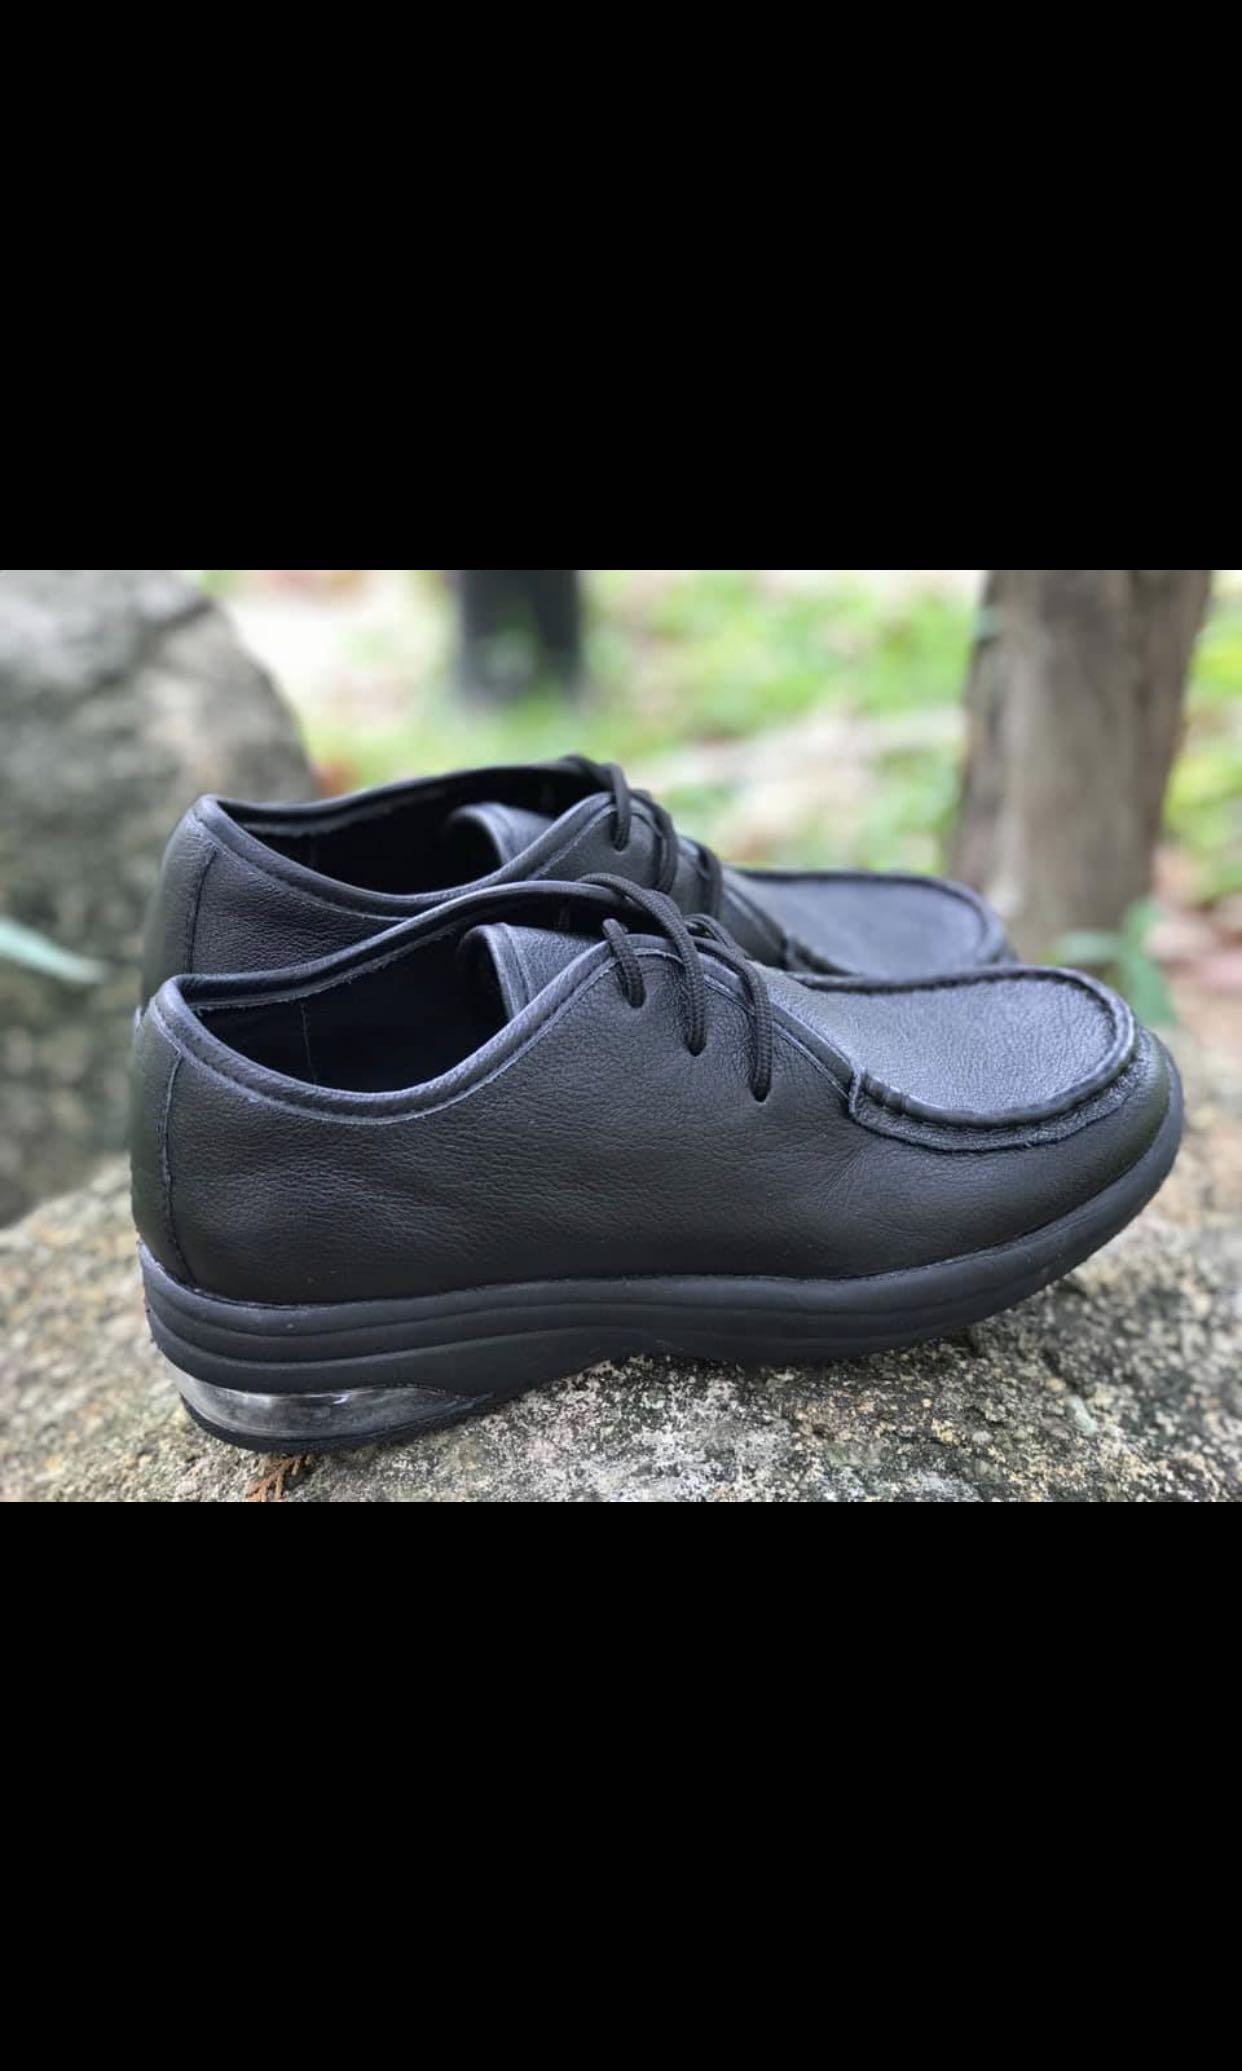 black informal shoes